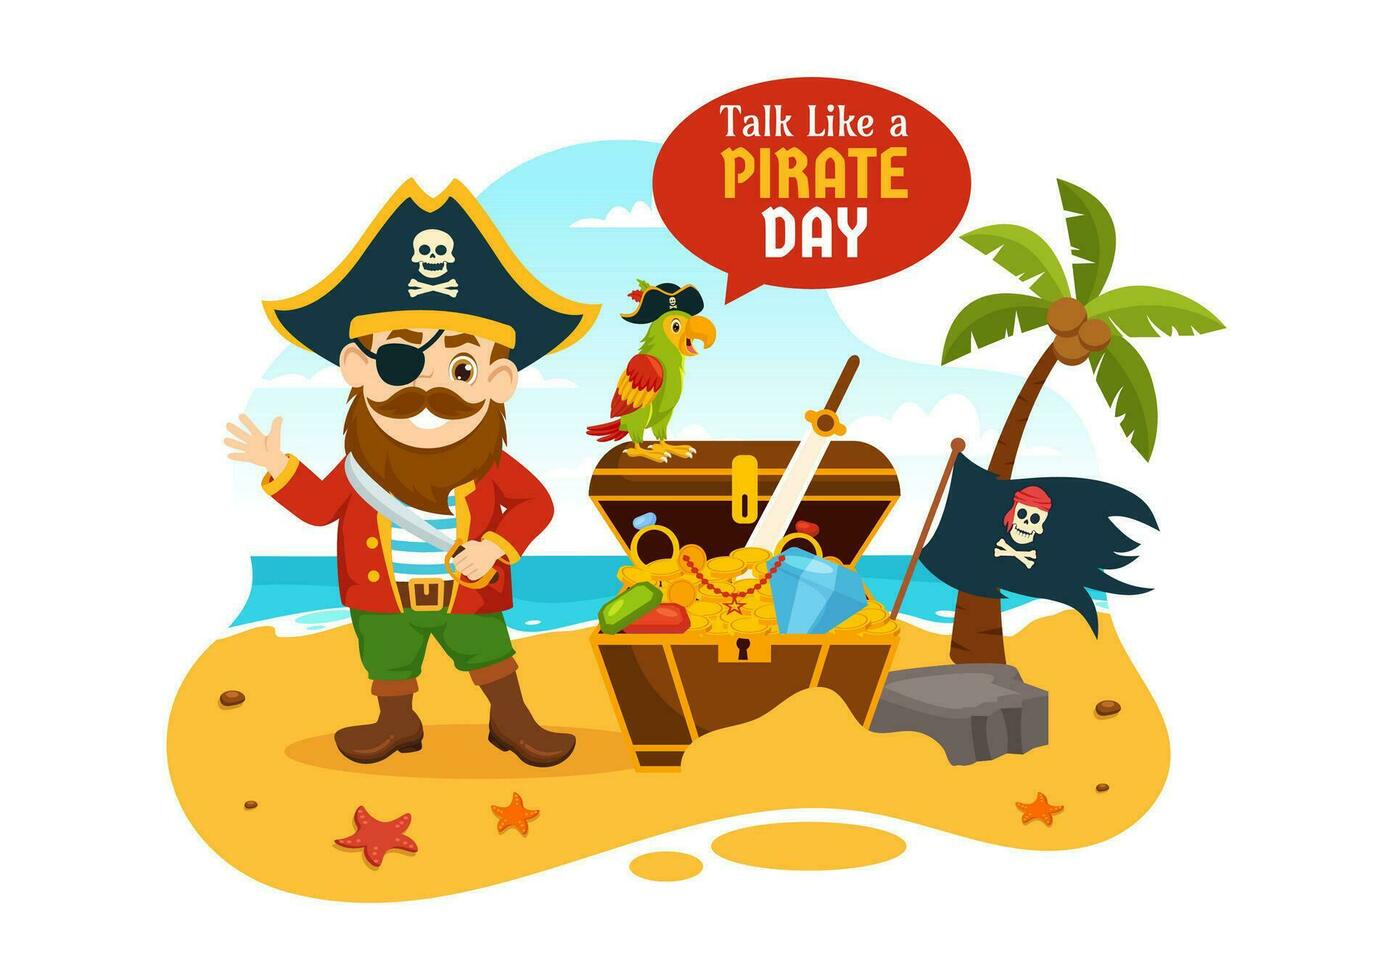 internacional hablar me gusta un pirata día vector ilustración con linda piratas dibujos animados personaje en mano dibujado para web bandera o aterrizaje página plantillas